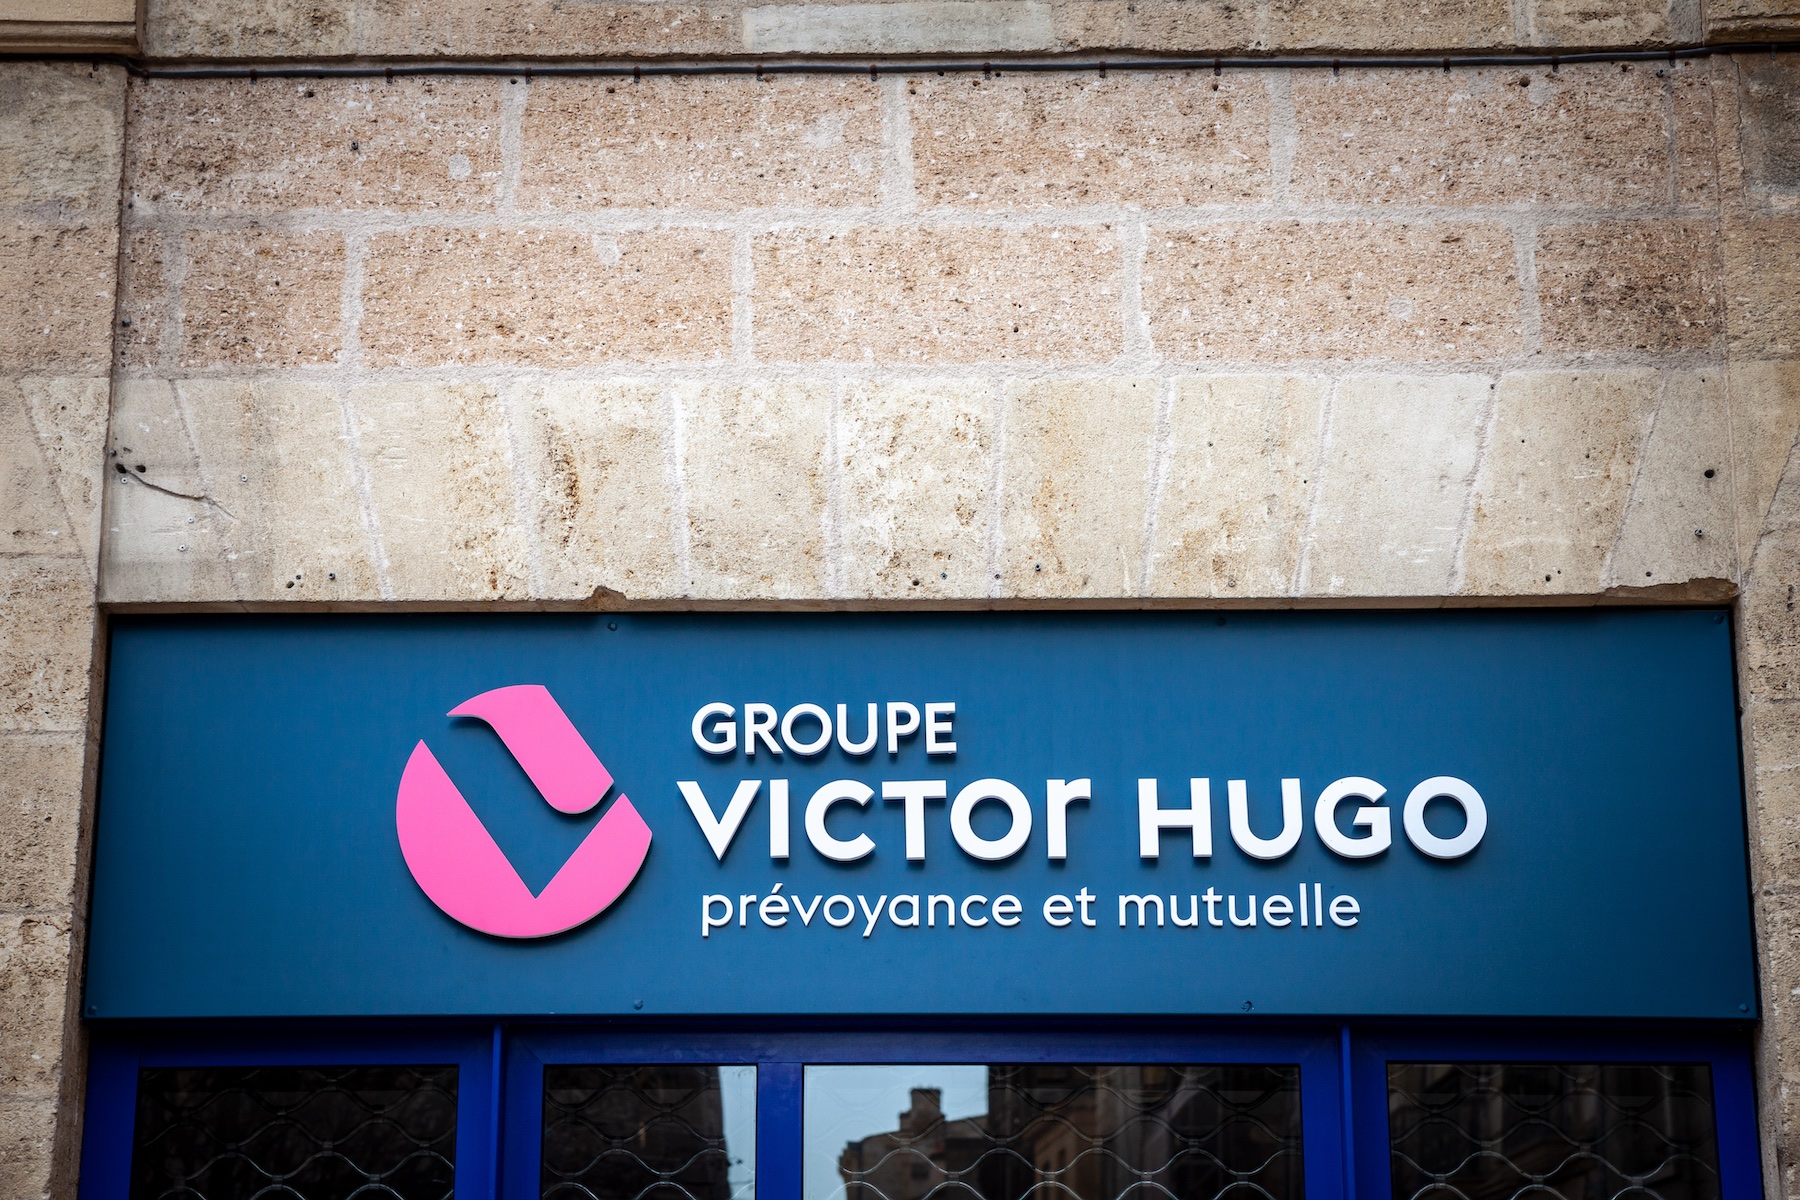 Bordeaux, Fransa'daki ana ofisinde Mutuelle Groupe Victor Hugo logosunun bulunduğu bir tabelanın resmi